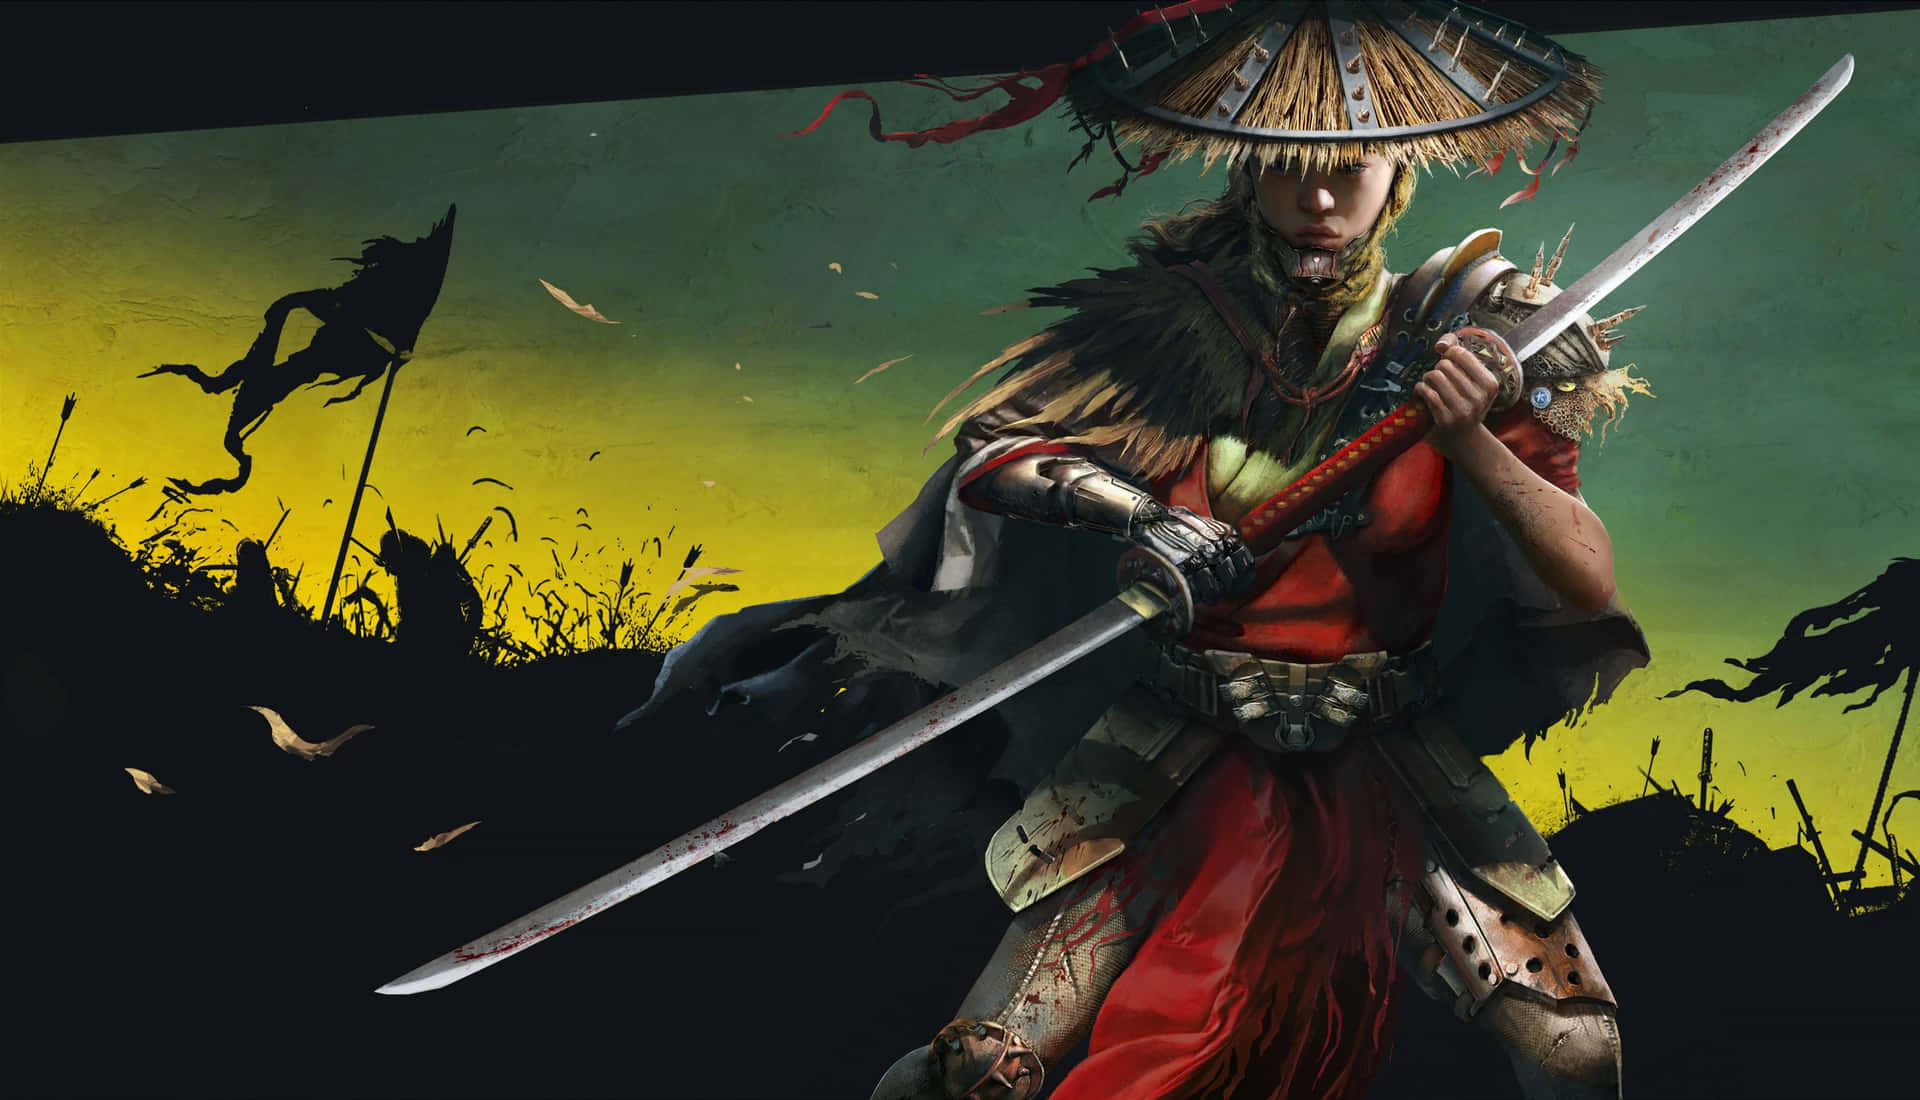 Einefrau In Einem Samurai-kostüm, Die Ein Schwert Hält.